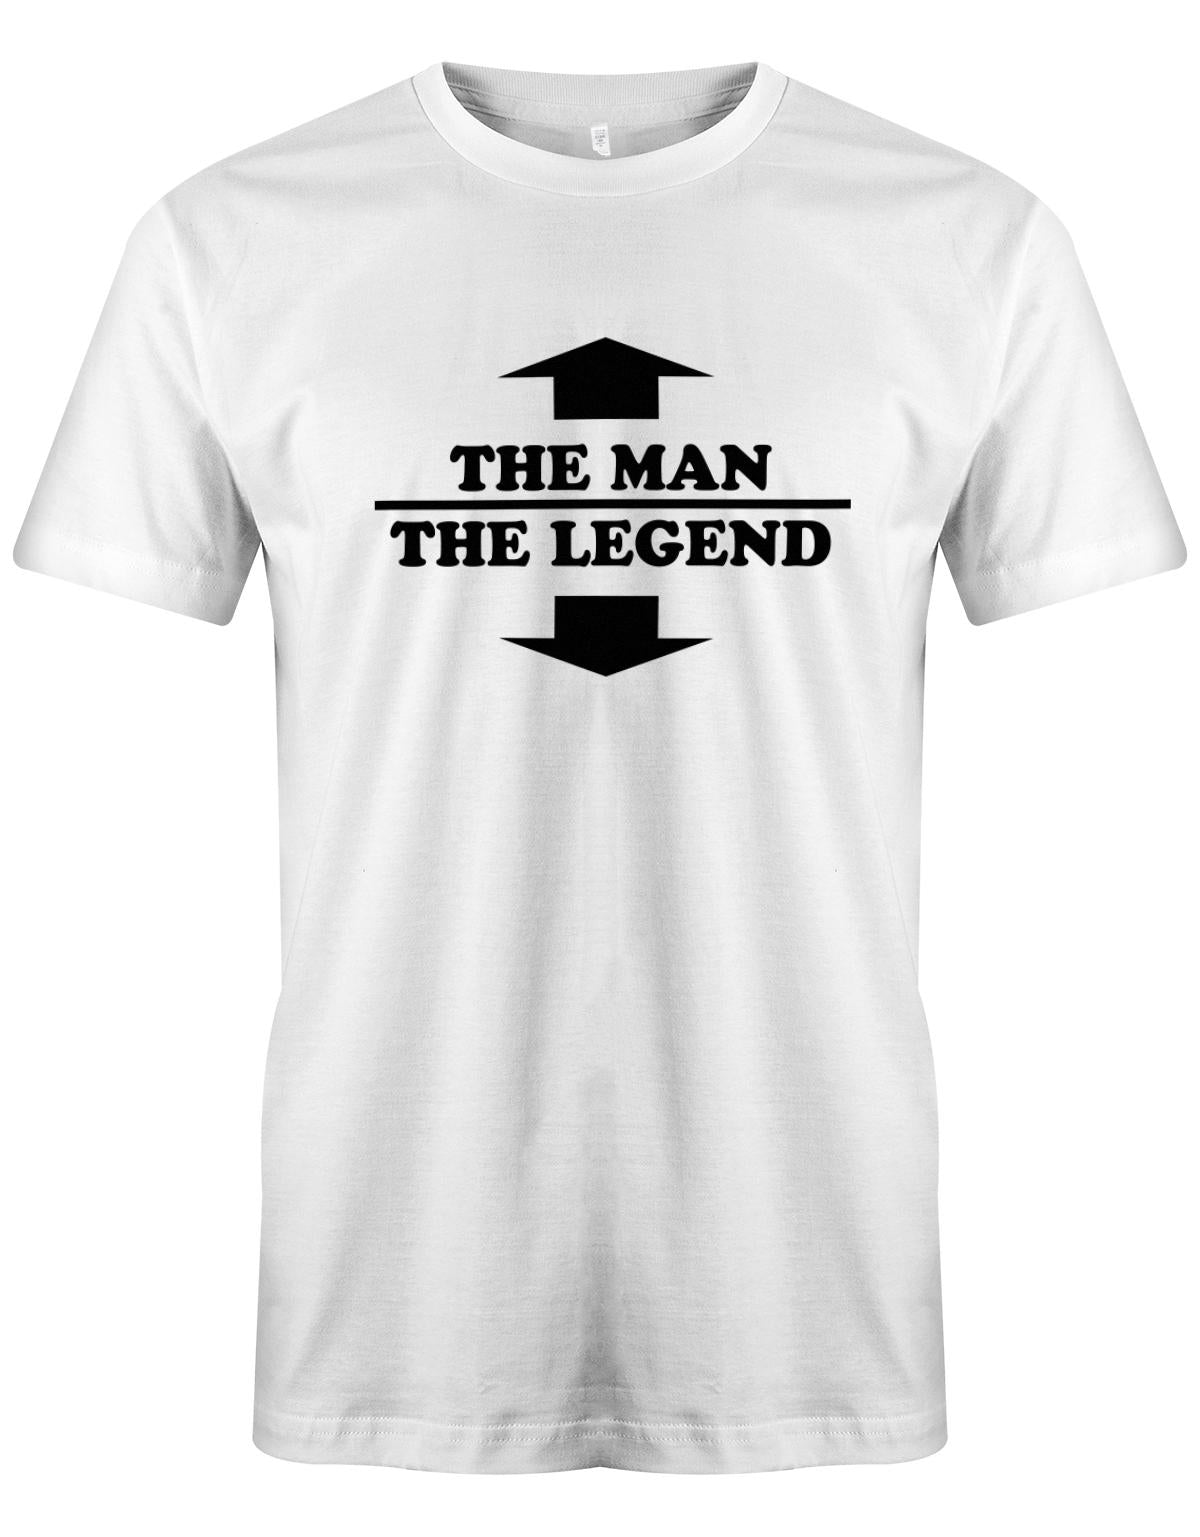 The-Man-the-legend-hereren-Shirt-Weiss